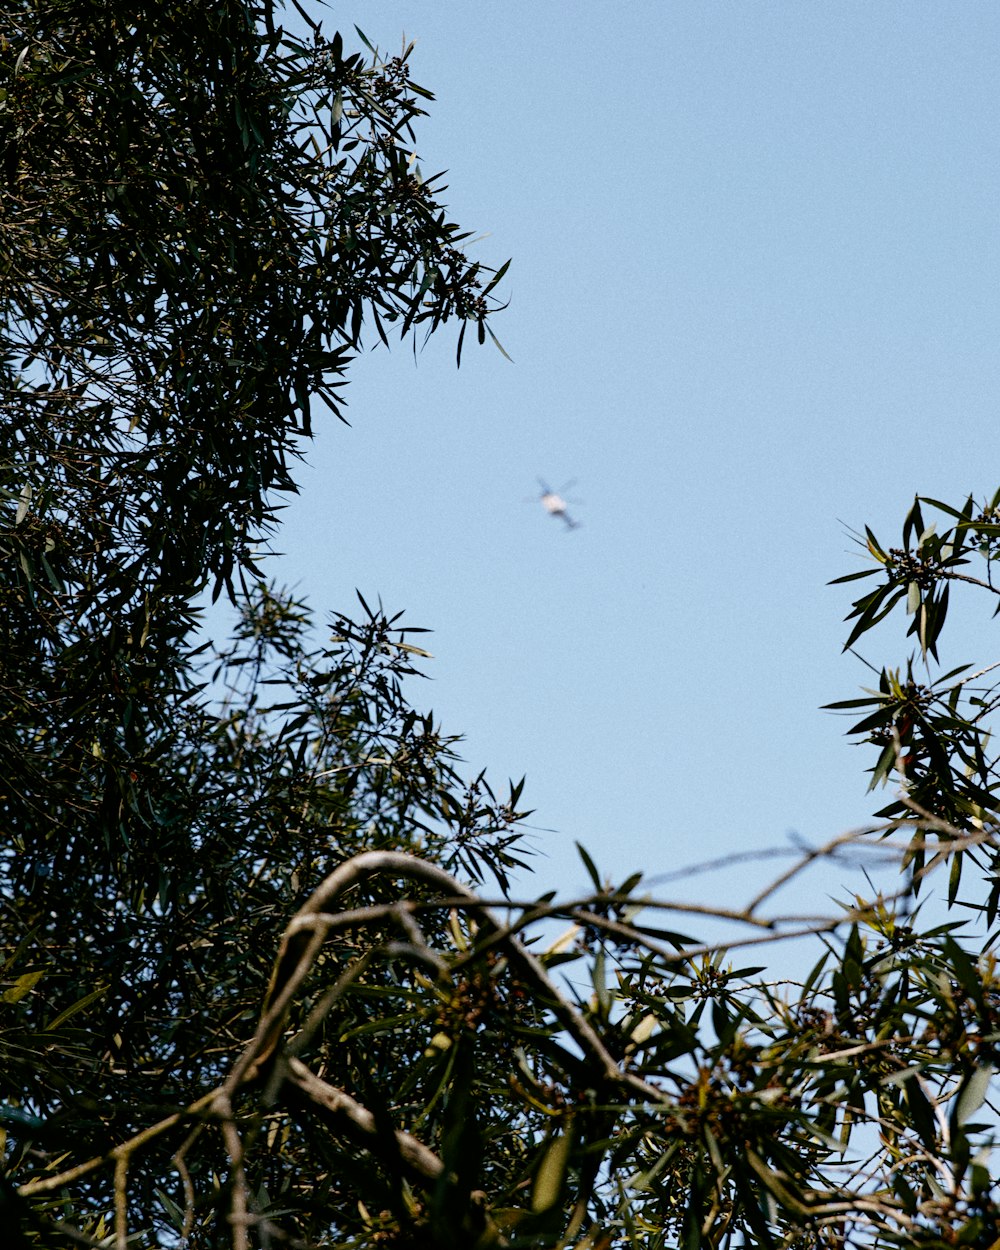 pájaros volando sobre árboles verdes durante el día